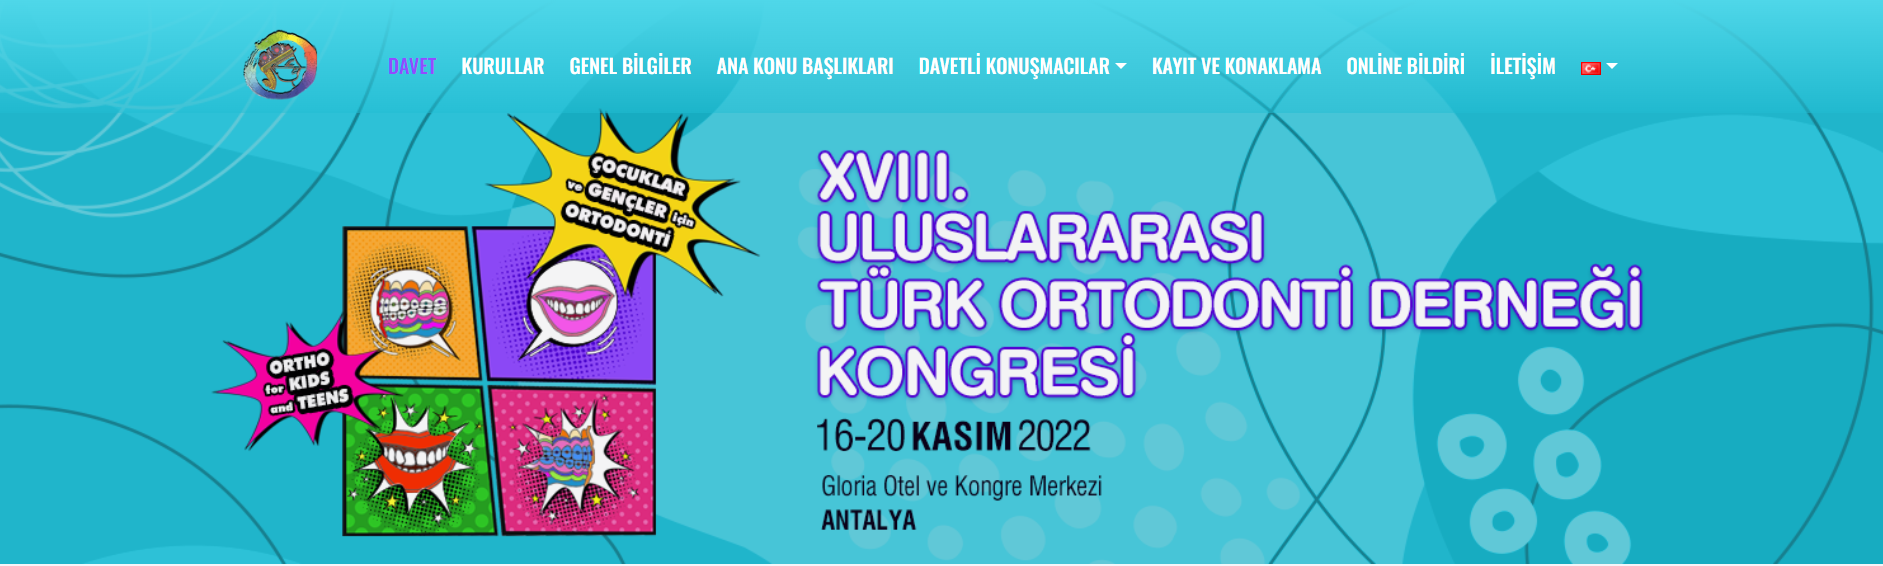 18. Uluslararası Türk Ortodonti Derneği Kongresi